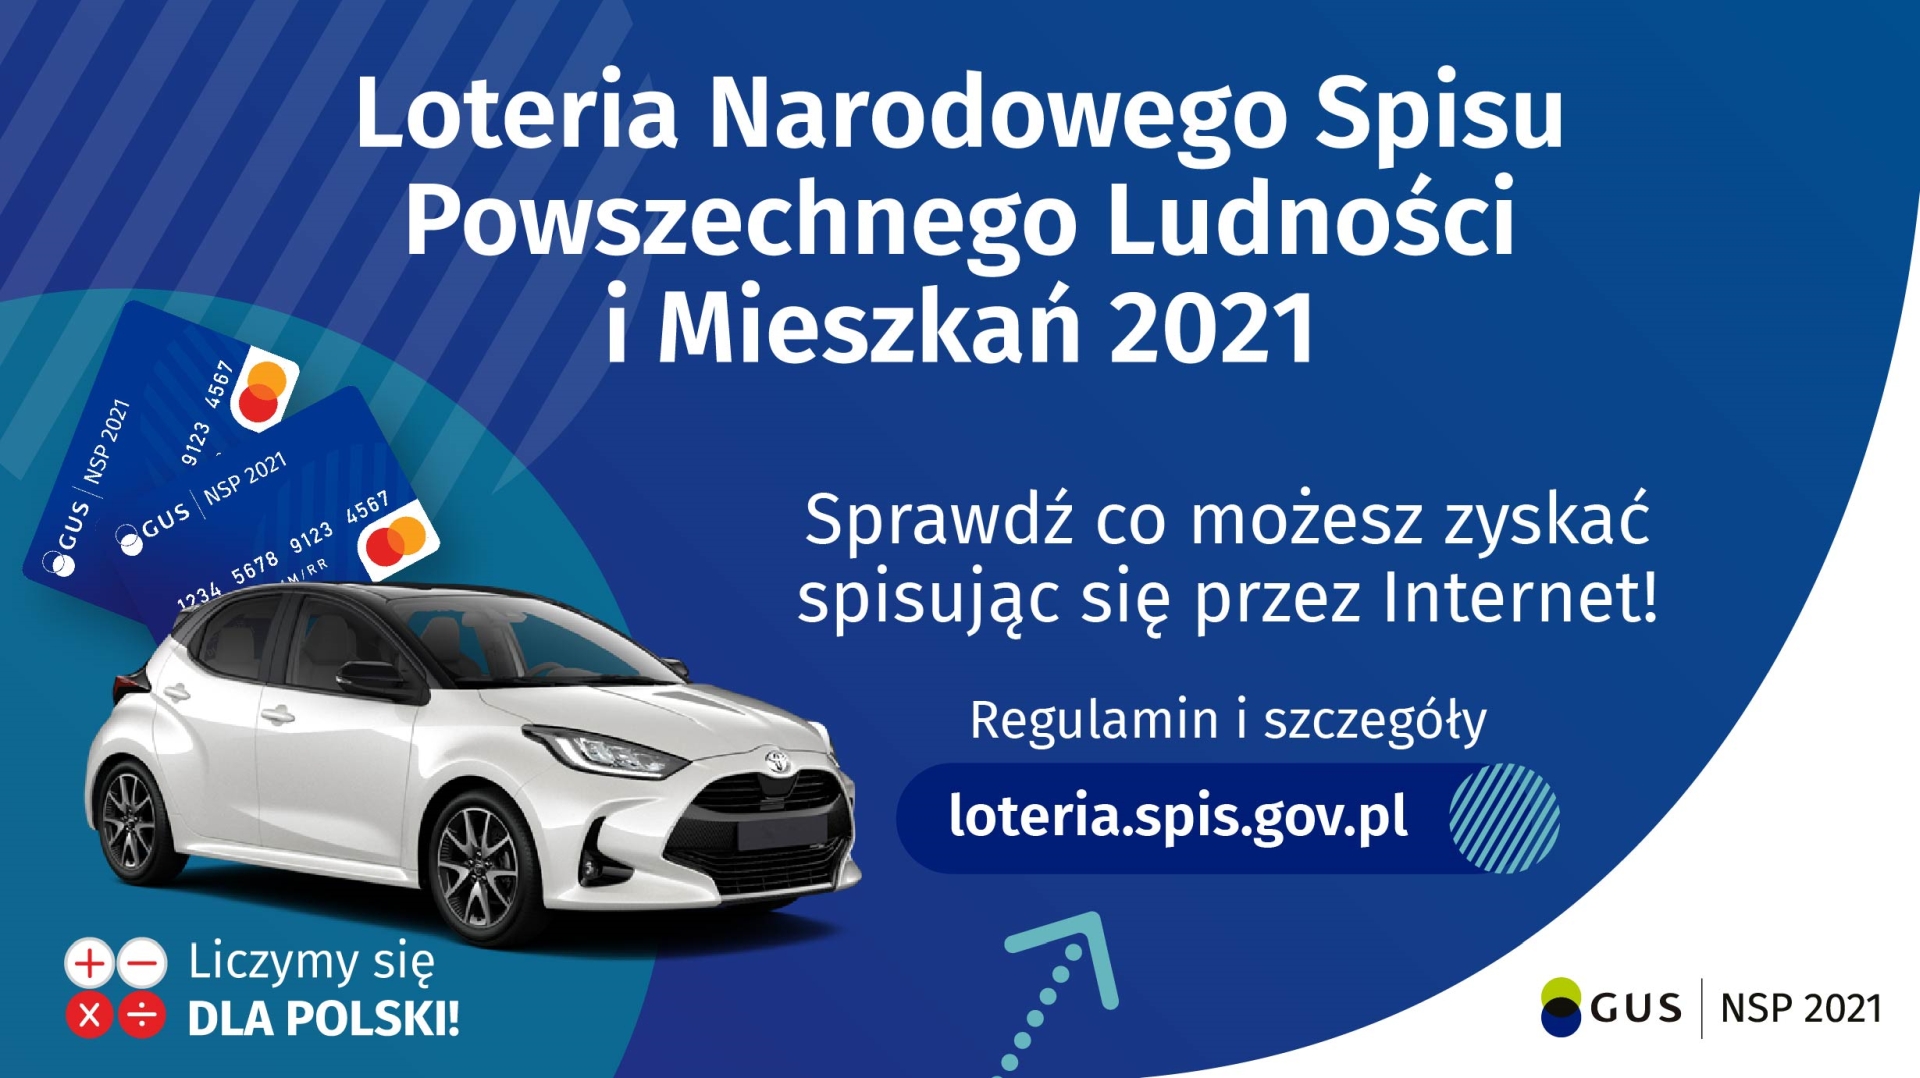 Plakat przedstawiający samochód oraz karty przedpłacone, możliwe do wyhrania w loterii narodowego spisu powszechnego. Więcej informacji pod adresem loteria.spis.gov.pl